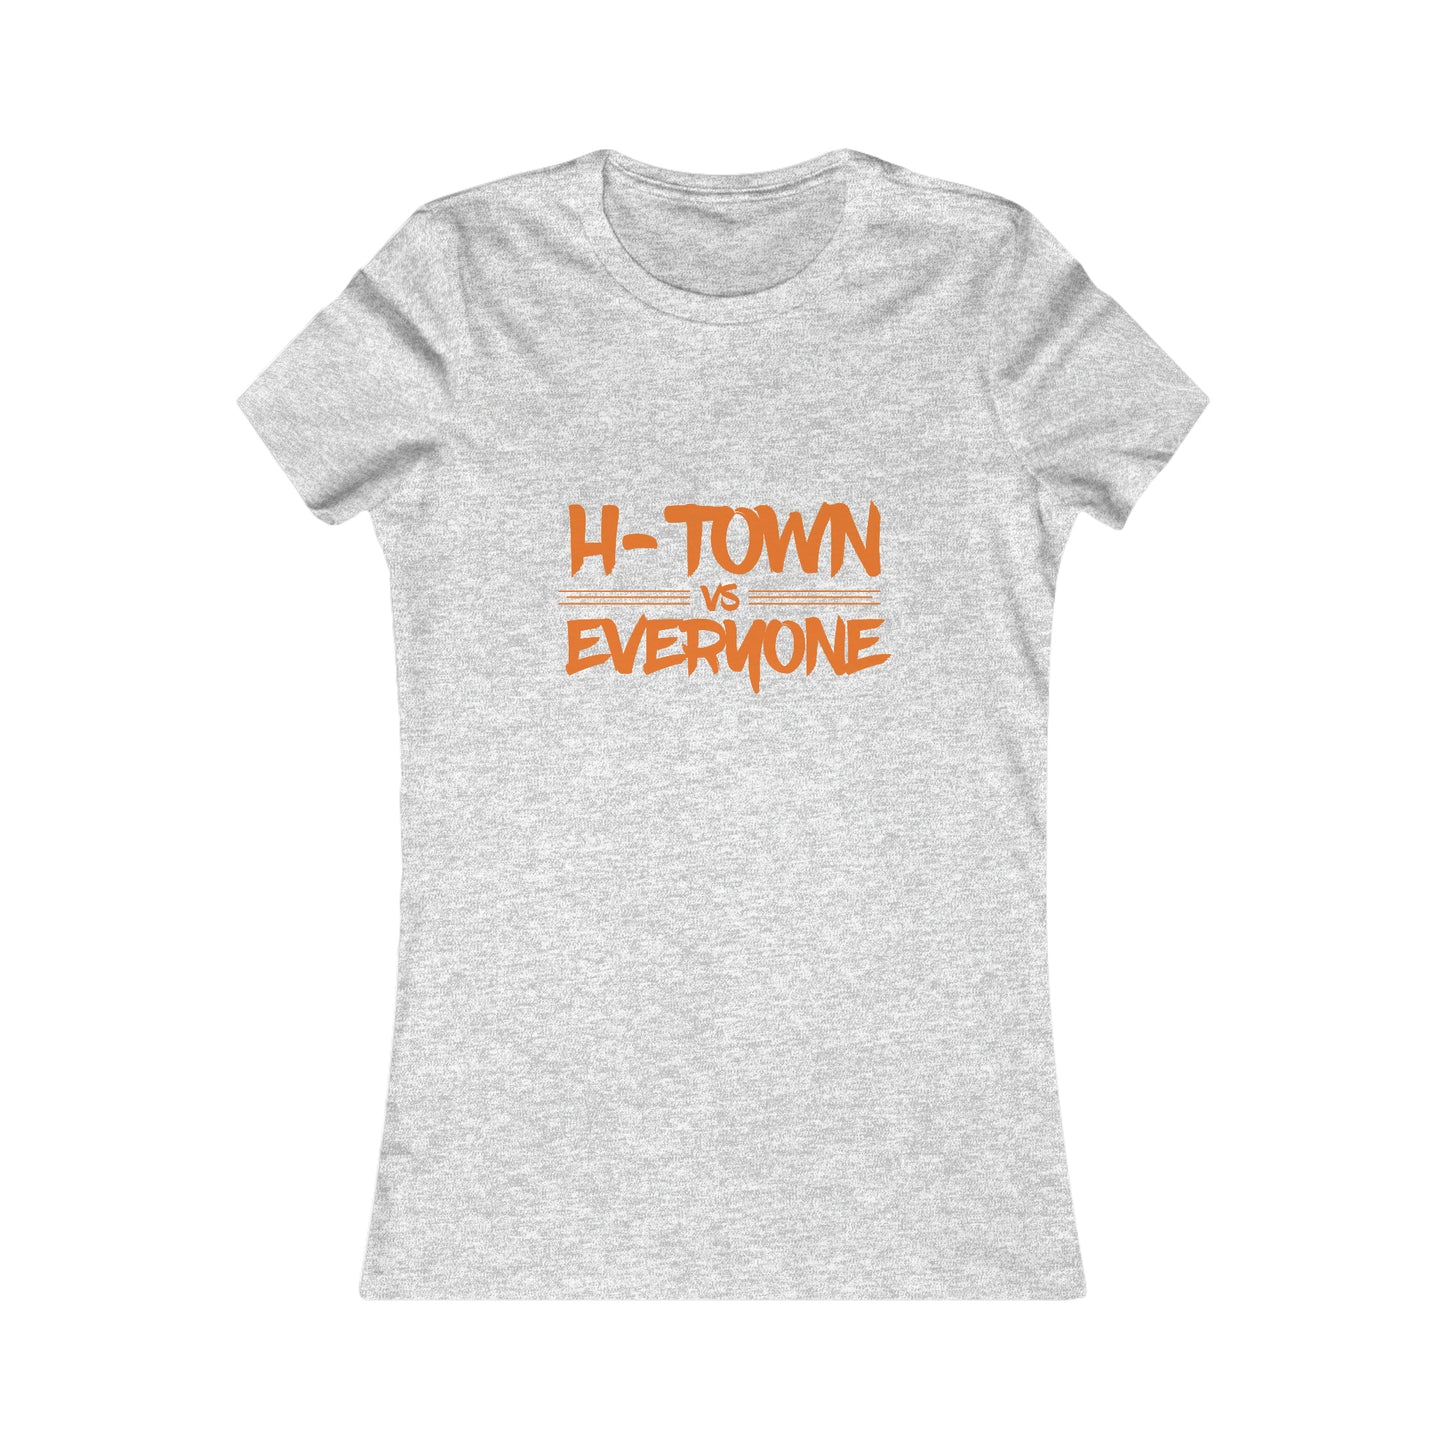 H-Town vs Everyone Women’s Favorite Tee